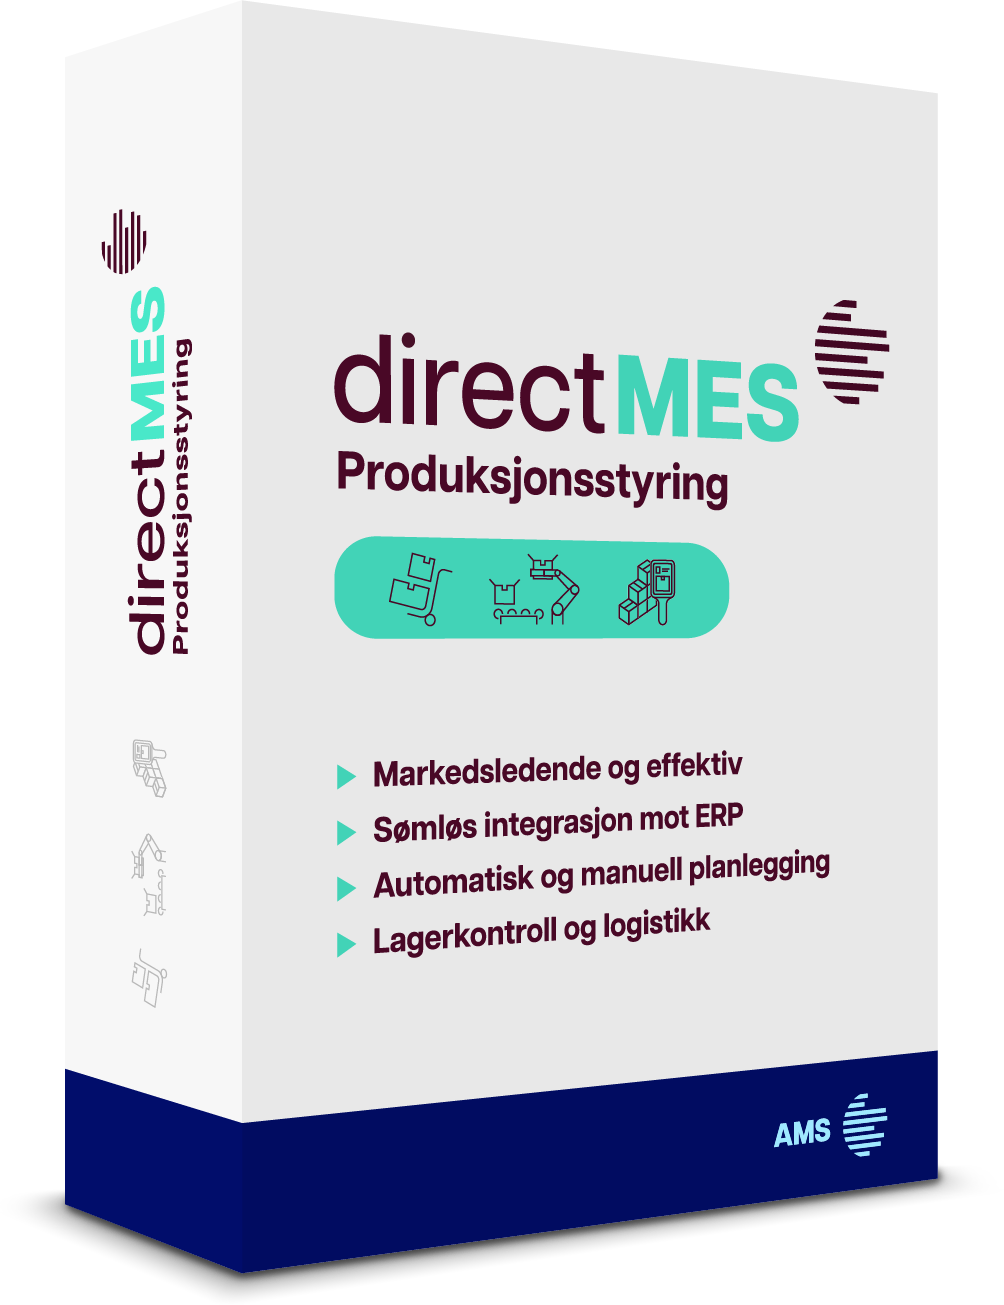 direct MES er en programvare fra AMS, utviklet basert på mer enn 30-års erfaring med produksjonsindustri i Norge og internasjonalt. Vår markedsledende MES-plattform vil sammen med ditt ERP-system gi deg en fremtidsrettet totalløsning, som gjør deg i stand til å videreutvikle og effektivisere din produksjonsbedrift.